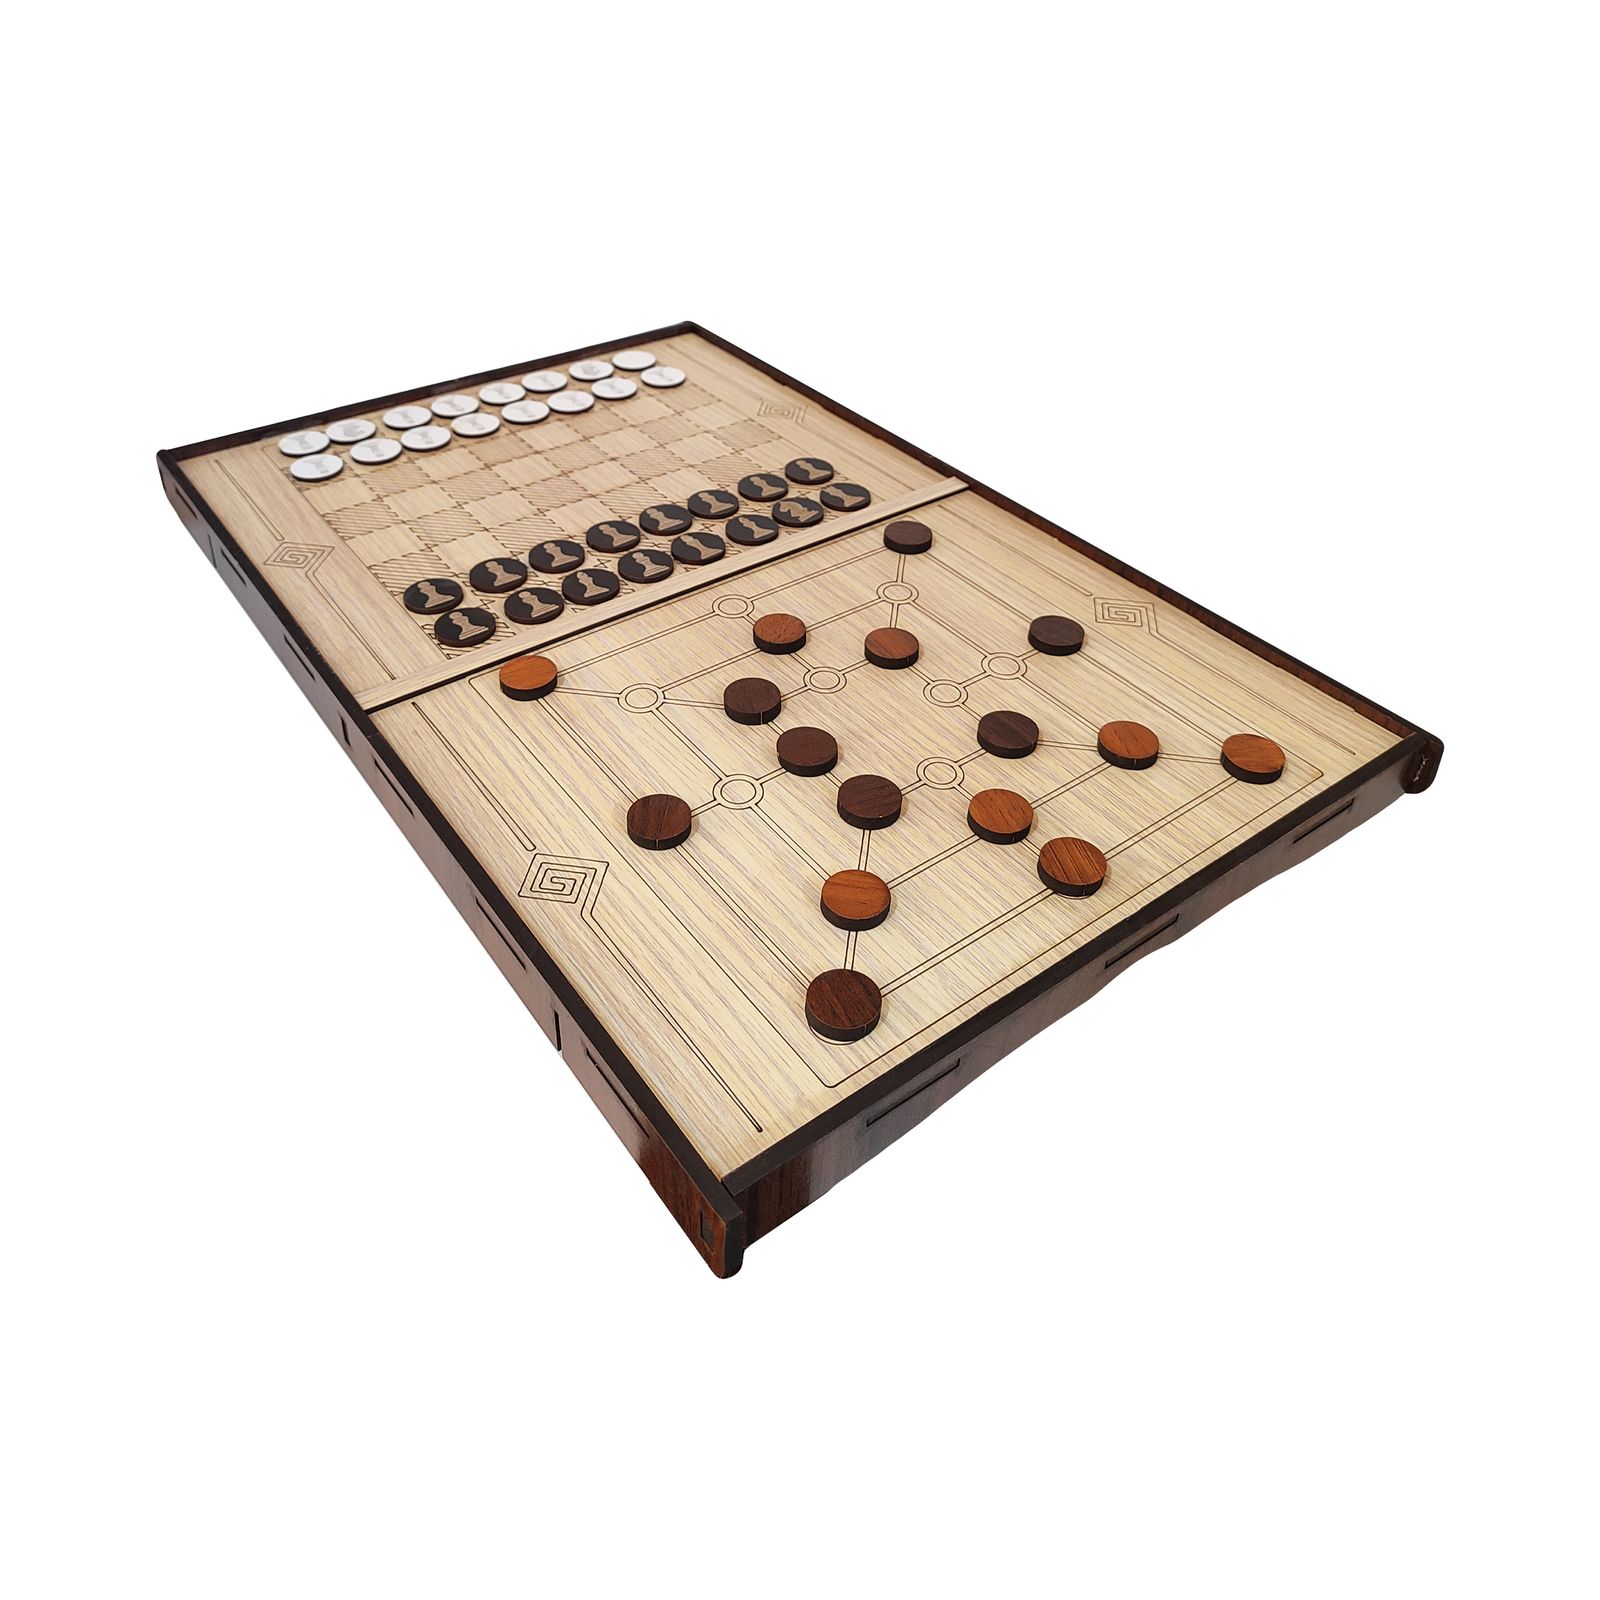 بازی فکری شوتبال و شطرنج مدل فروردین کد 03 -  - 1